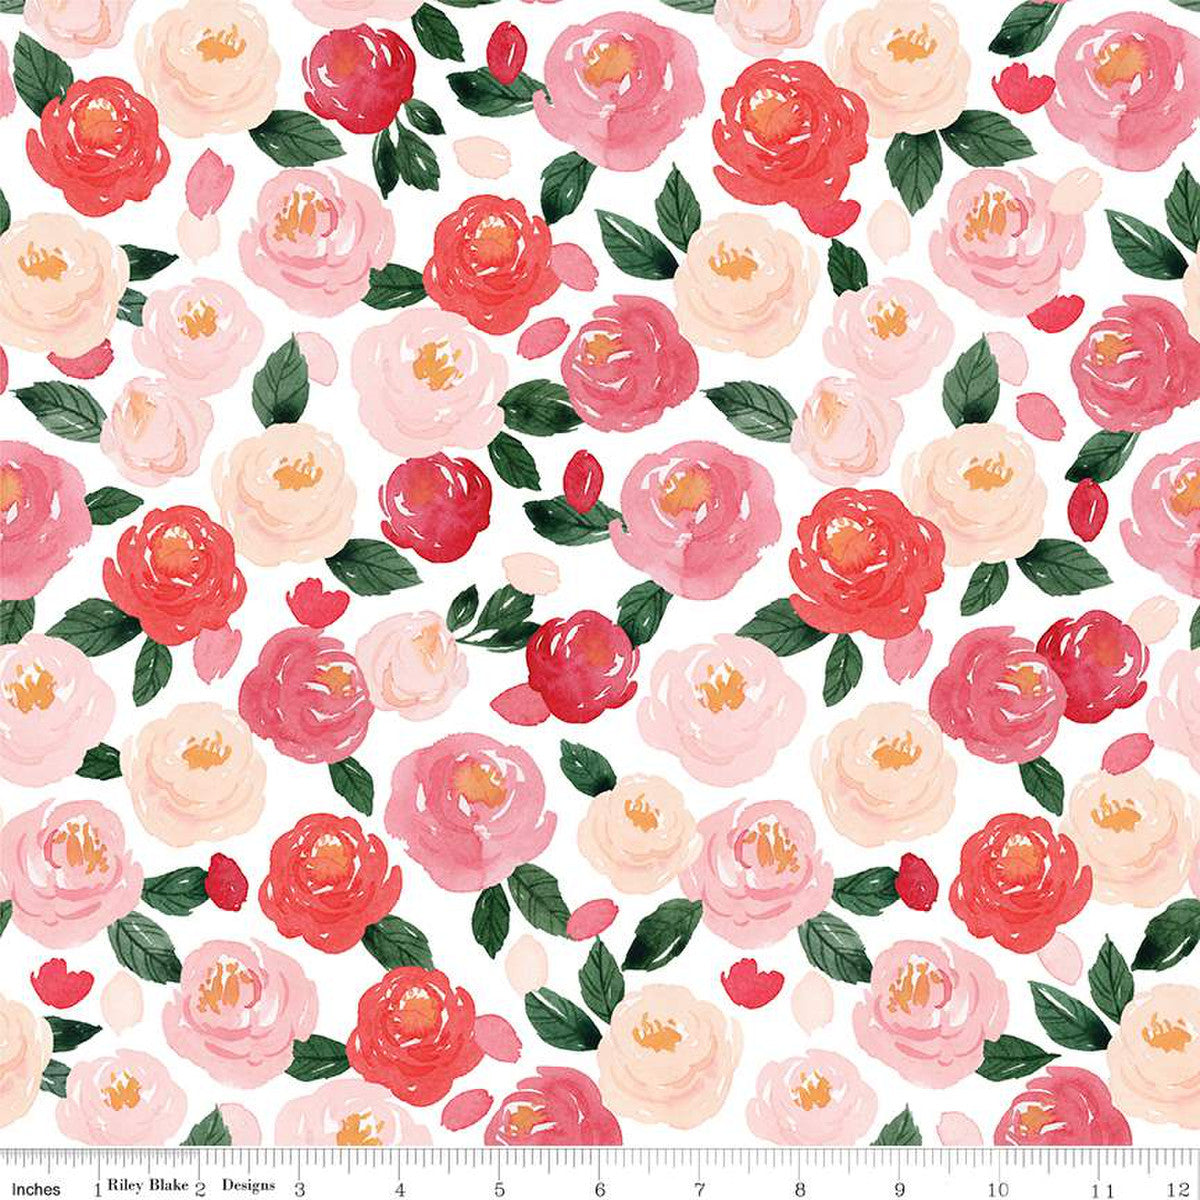 SALE My Valentine Hearts C14151 Black - Riley Blake Designs - Valentine's  Day Valentines - Quilting Cotton Fabric